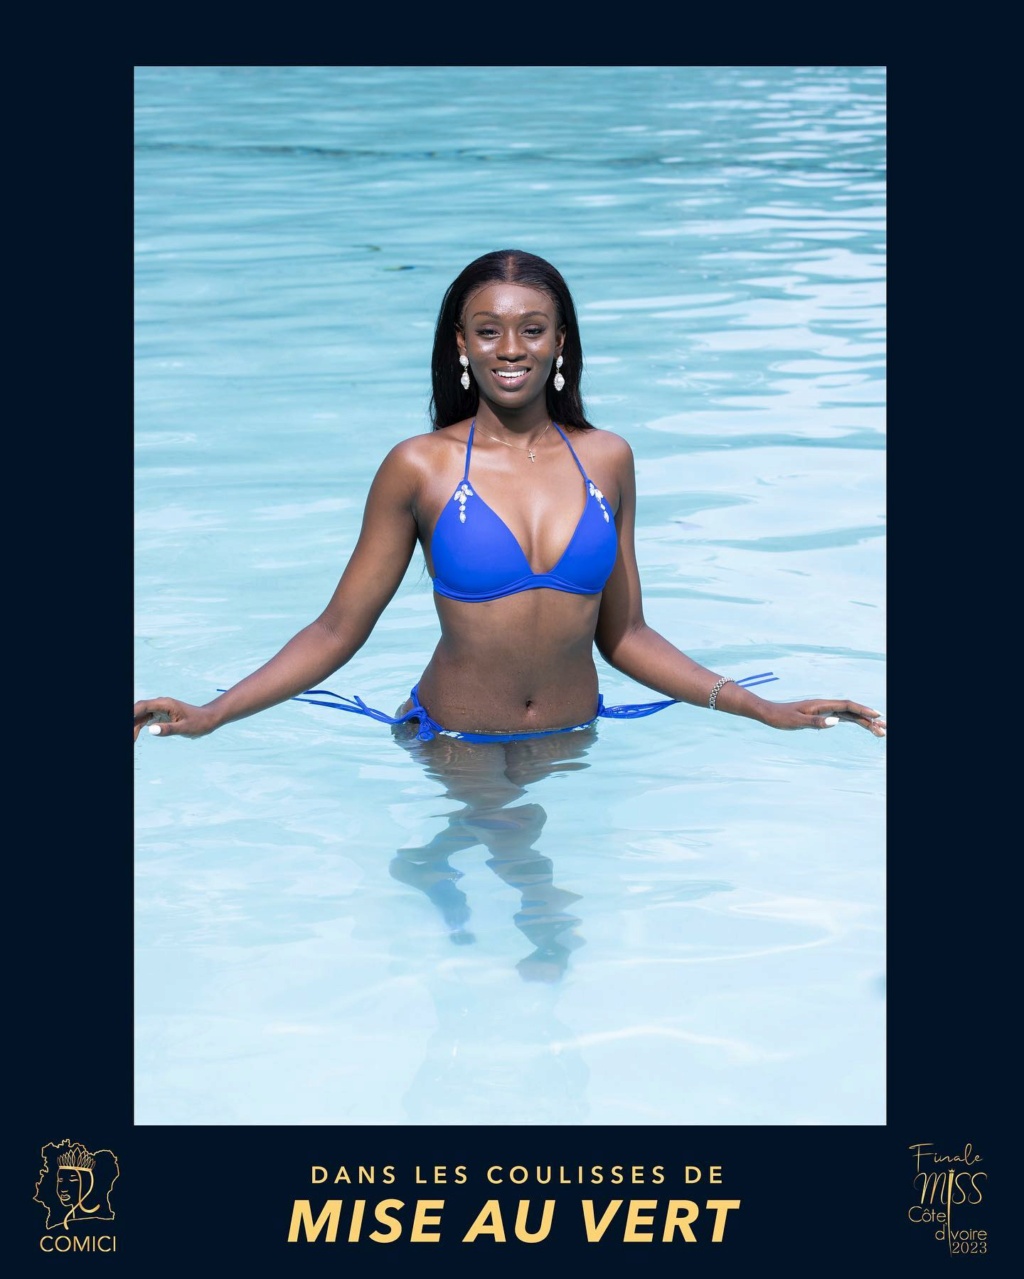 Miss Cote d'Ivoire 2023 Ins19270